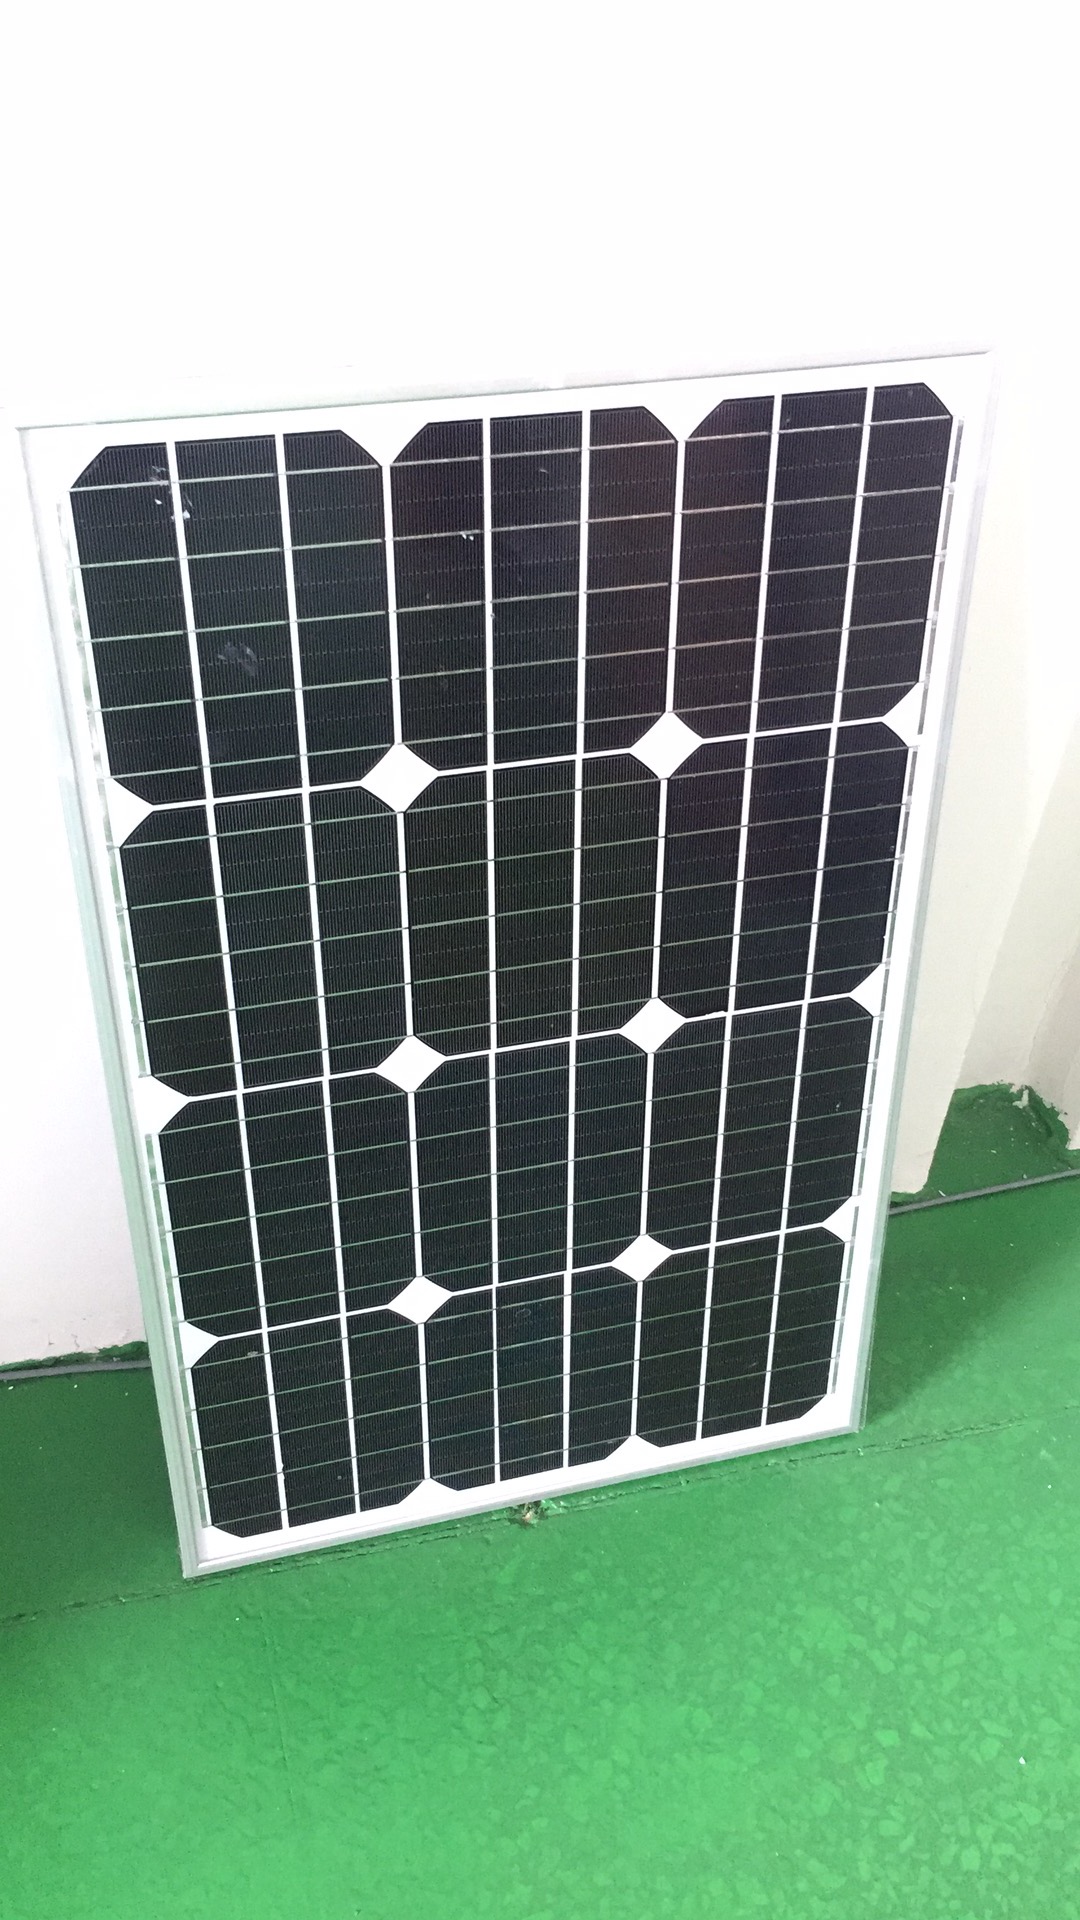 太阳能电池板 太阳能电池板厂家 太阳能电池板厂家直销 太阳能电池板生产厂家 太阳能电池板供应商 太阳能电池板价格图片